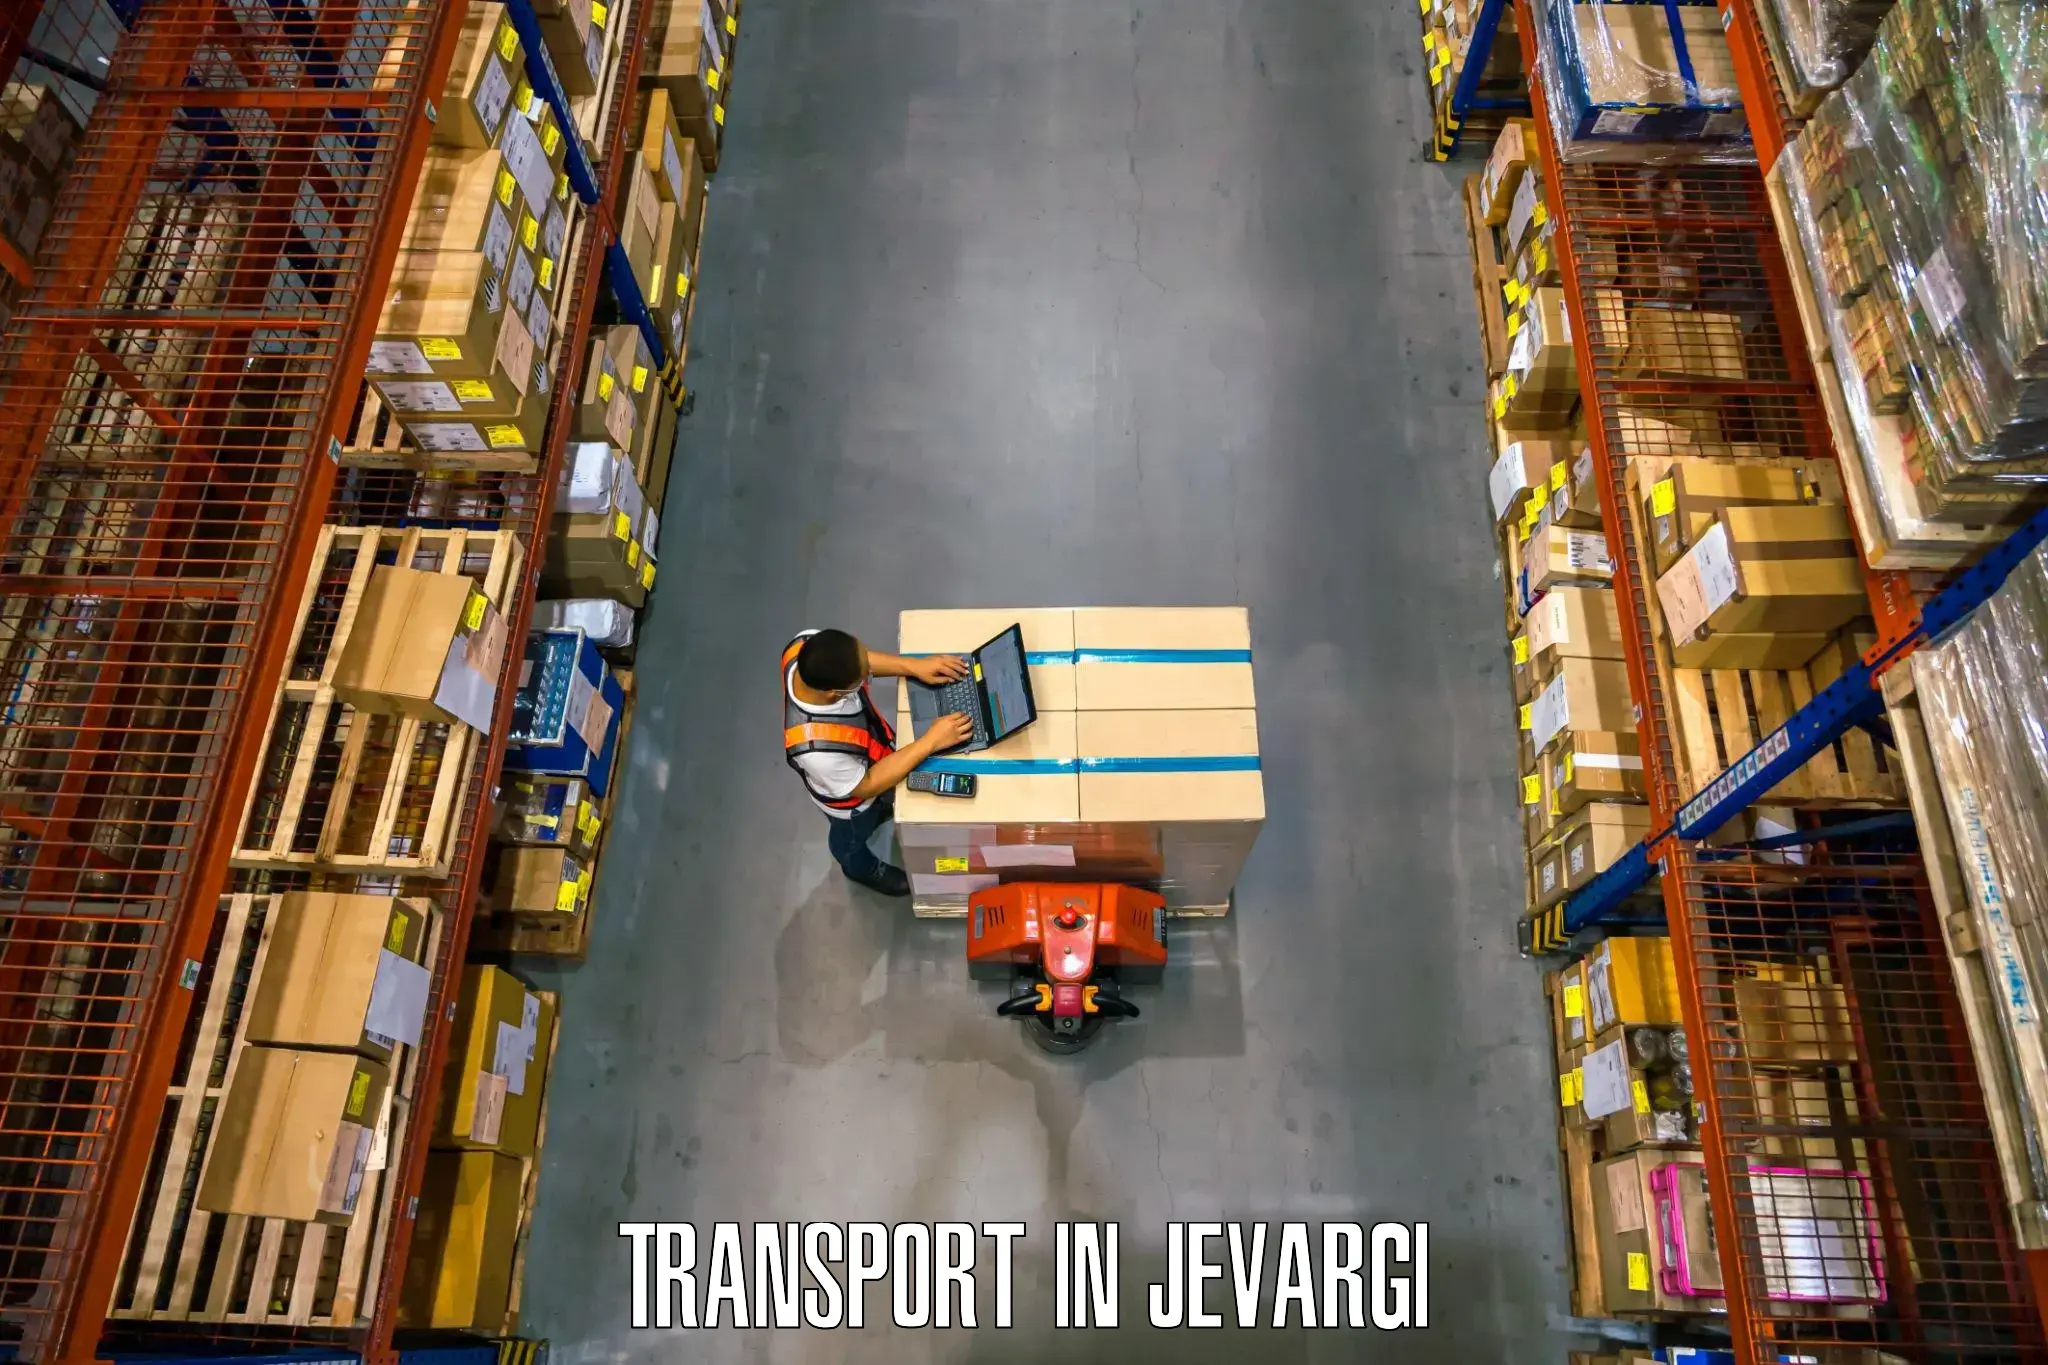 Road transport online services in Jevargi